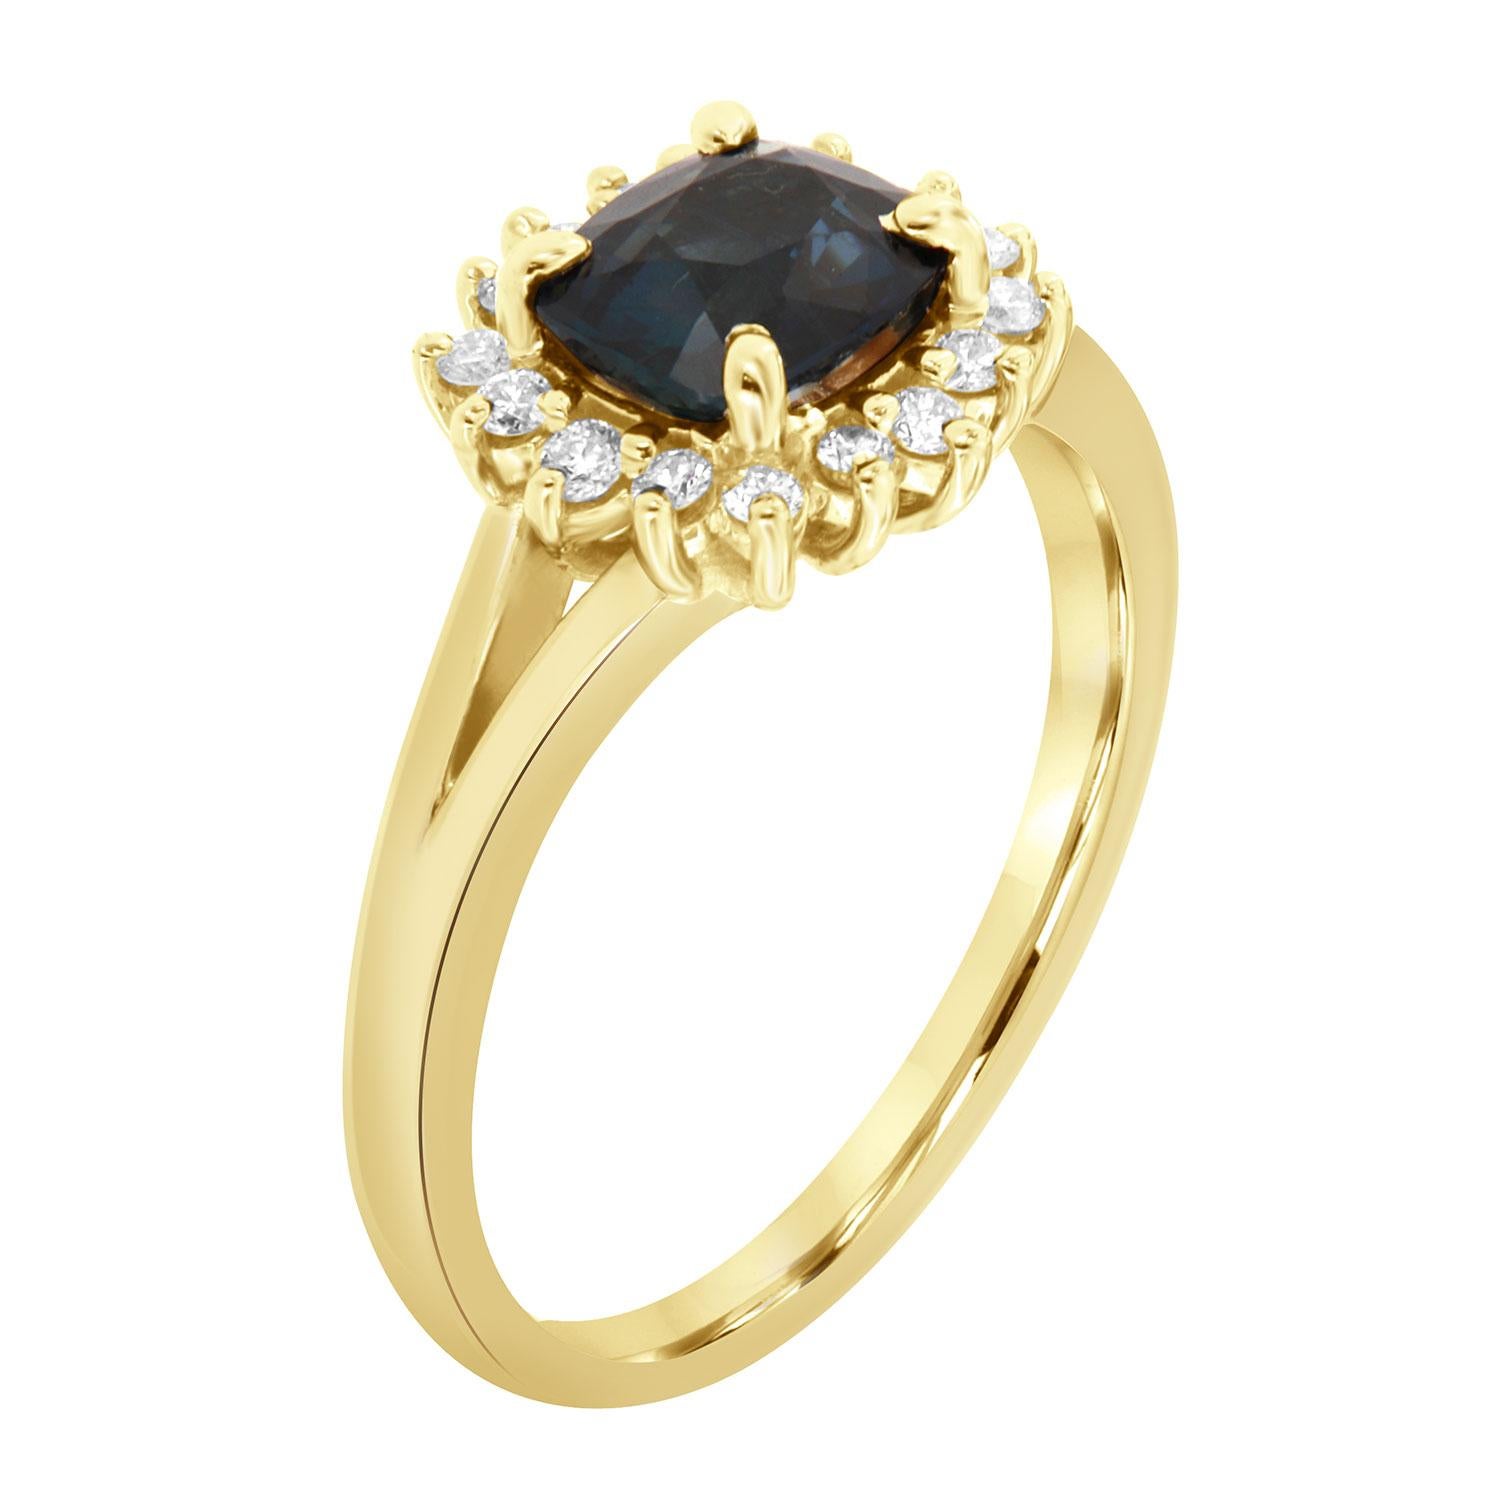 Cette bague en or jaune 14k présente un magnifique saphir bleu vibrant de 1,57 carat, de forme coussin allongé, serti dans un style est-ouest et entouré d'un halo de quatorze (14) diamants ronds brillants d'un poids total de 0,20 carat.  
L'anneau